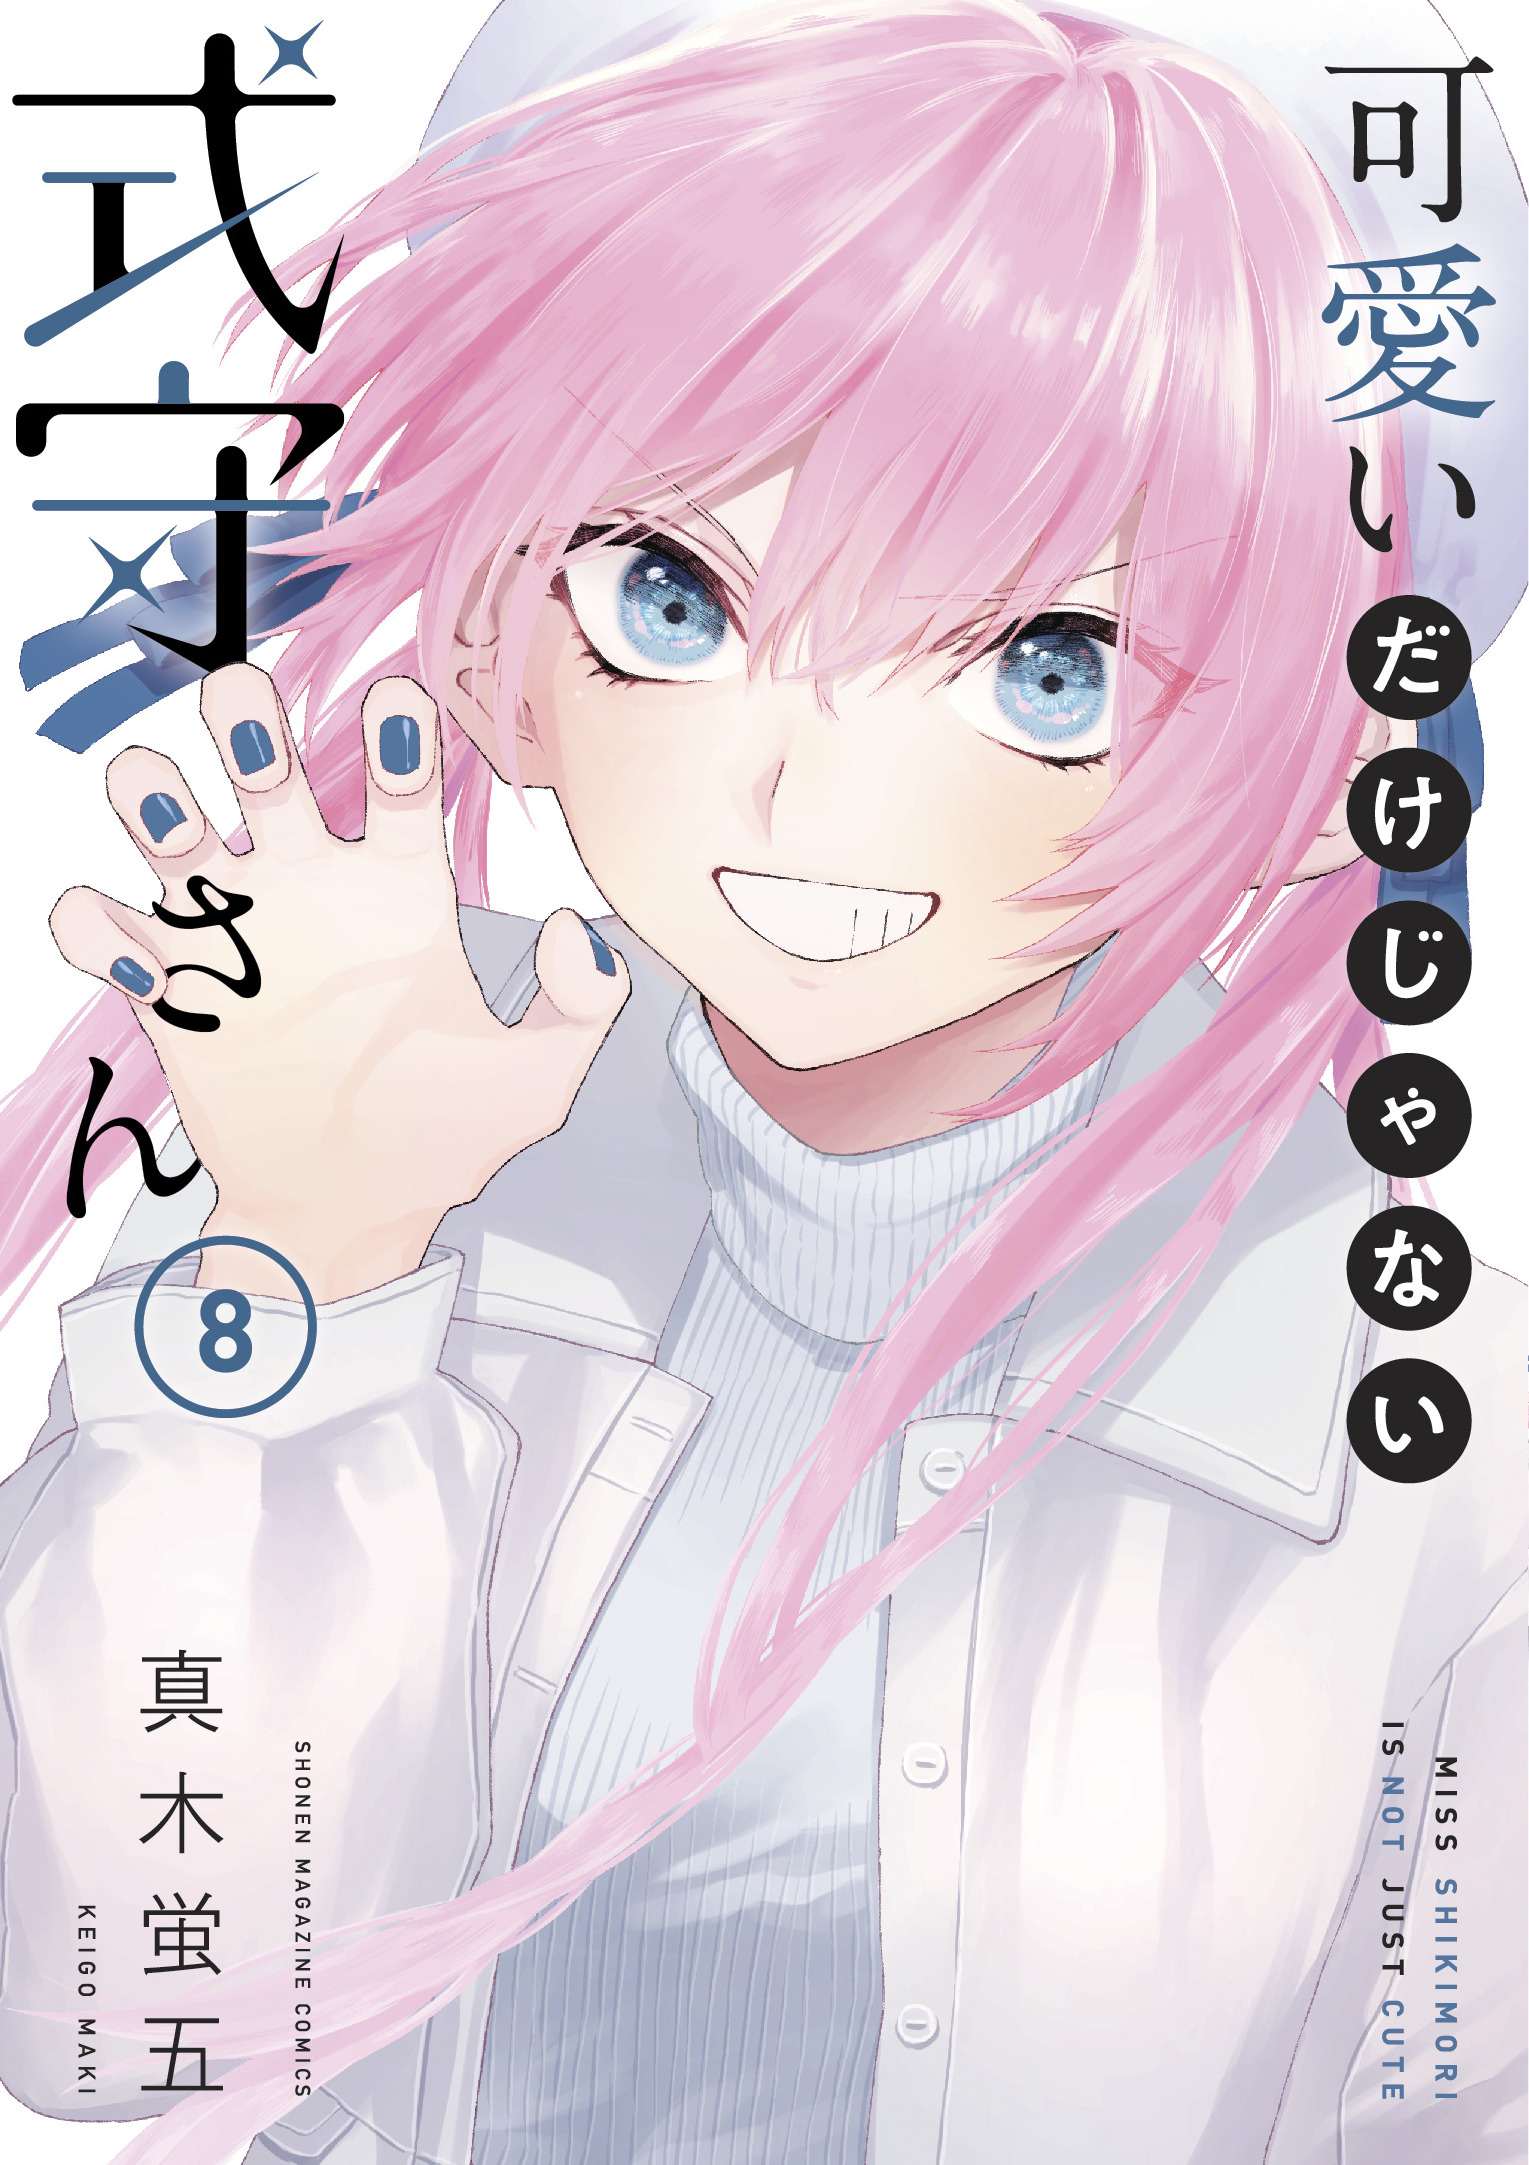 Shikimori's Not Just a Cutie Manga Volume 8